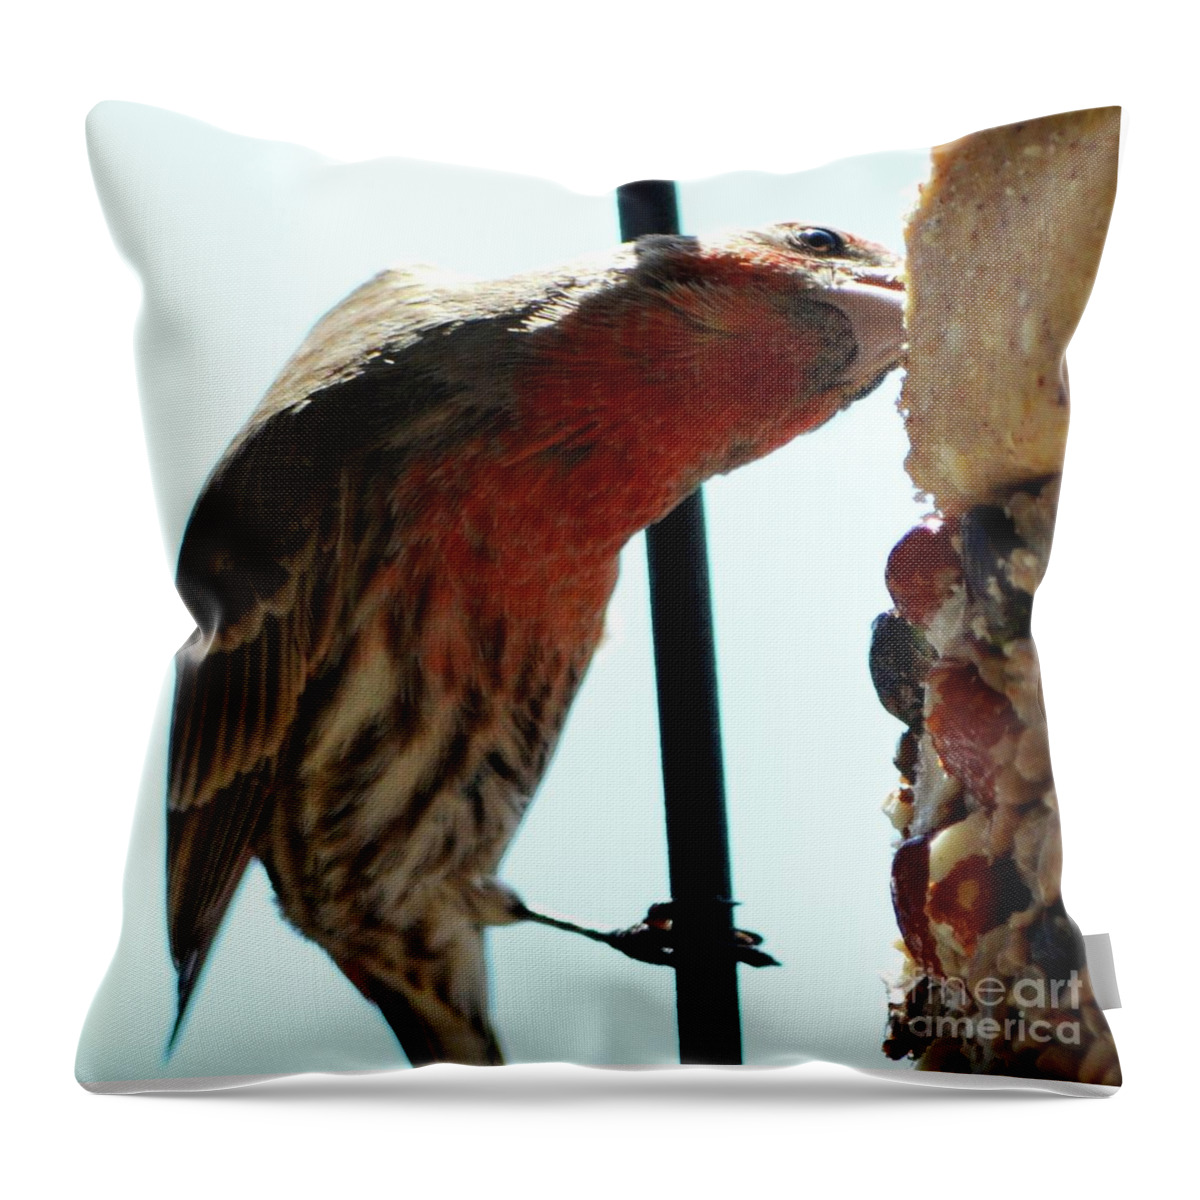 Bird Throw Pillow featuring the photograph Bird Hits the Jackpot by Cindy Schneider